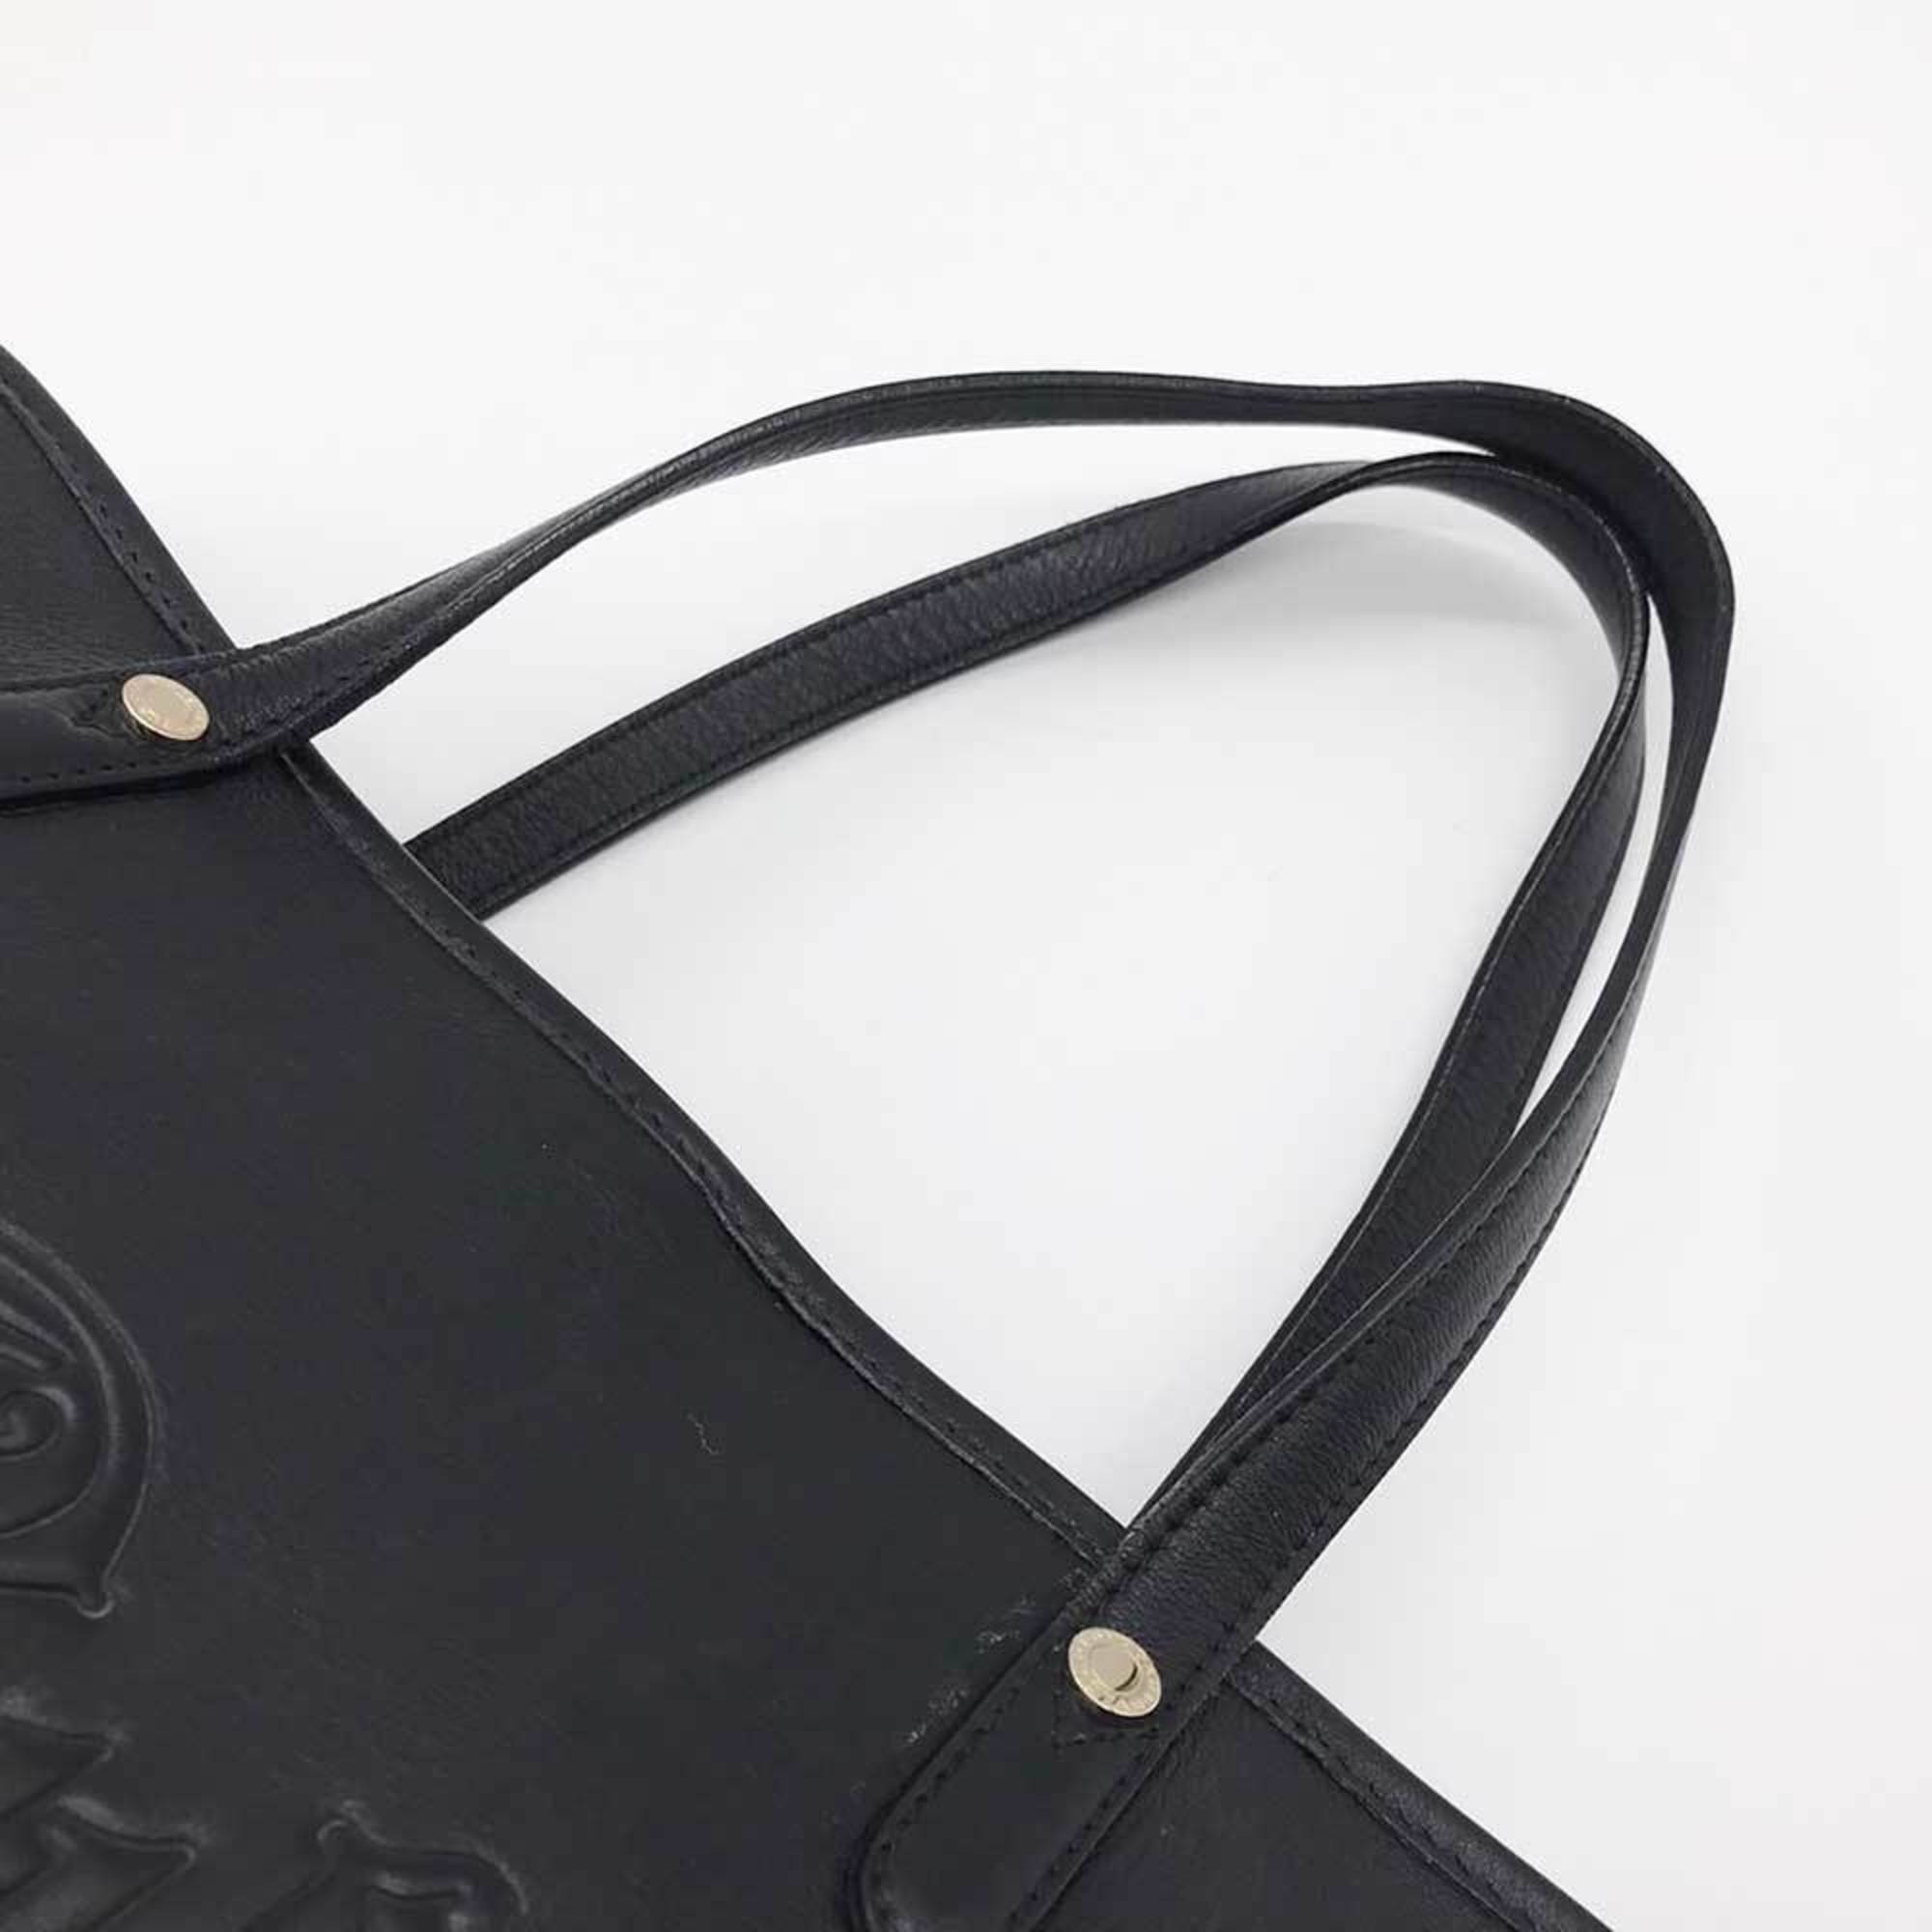 BVLGARI Tote Bag Collezione Hand Black Leather